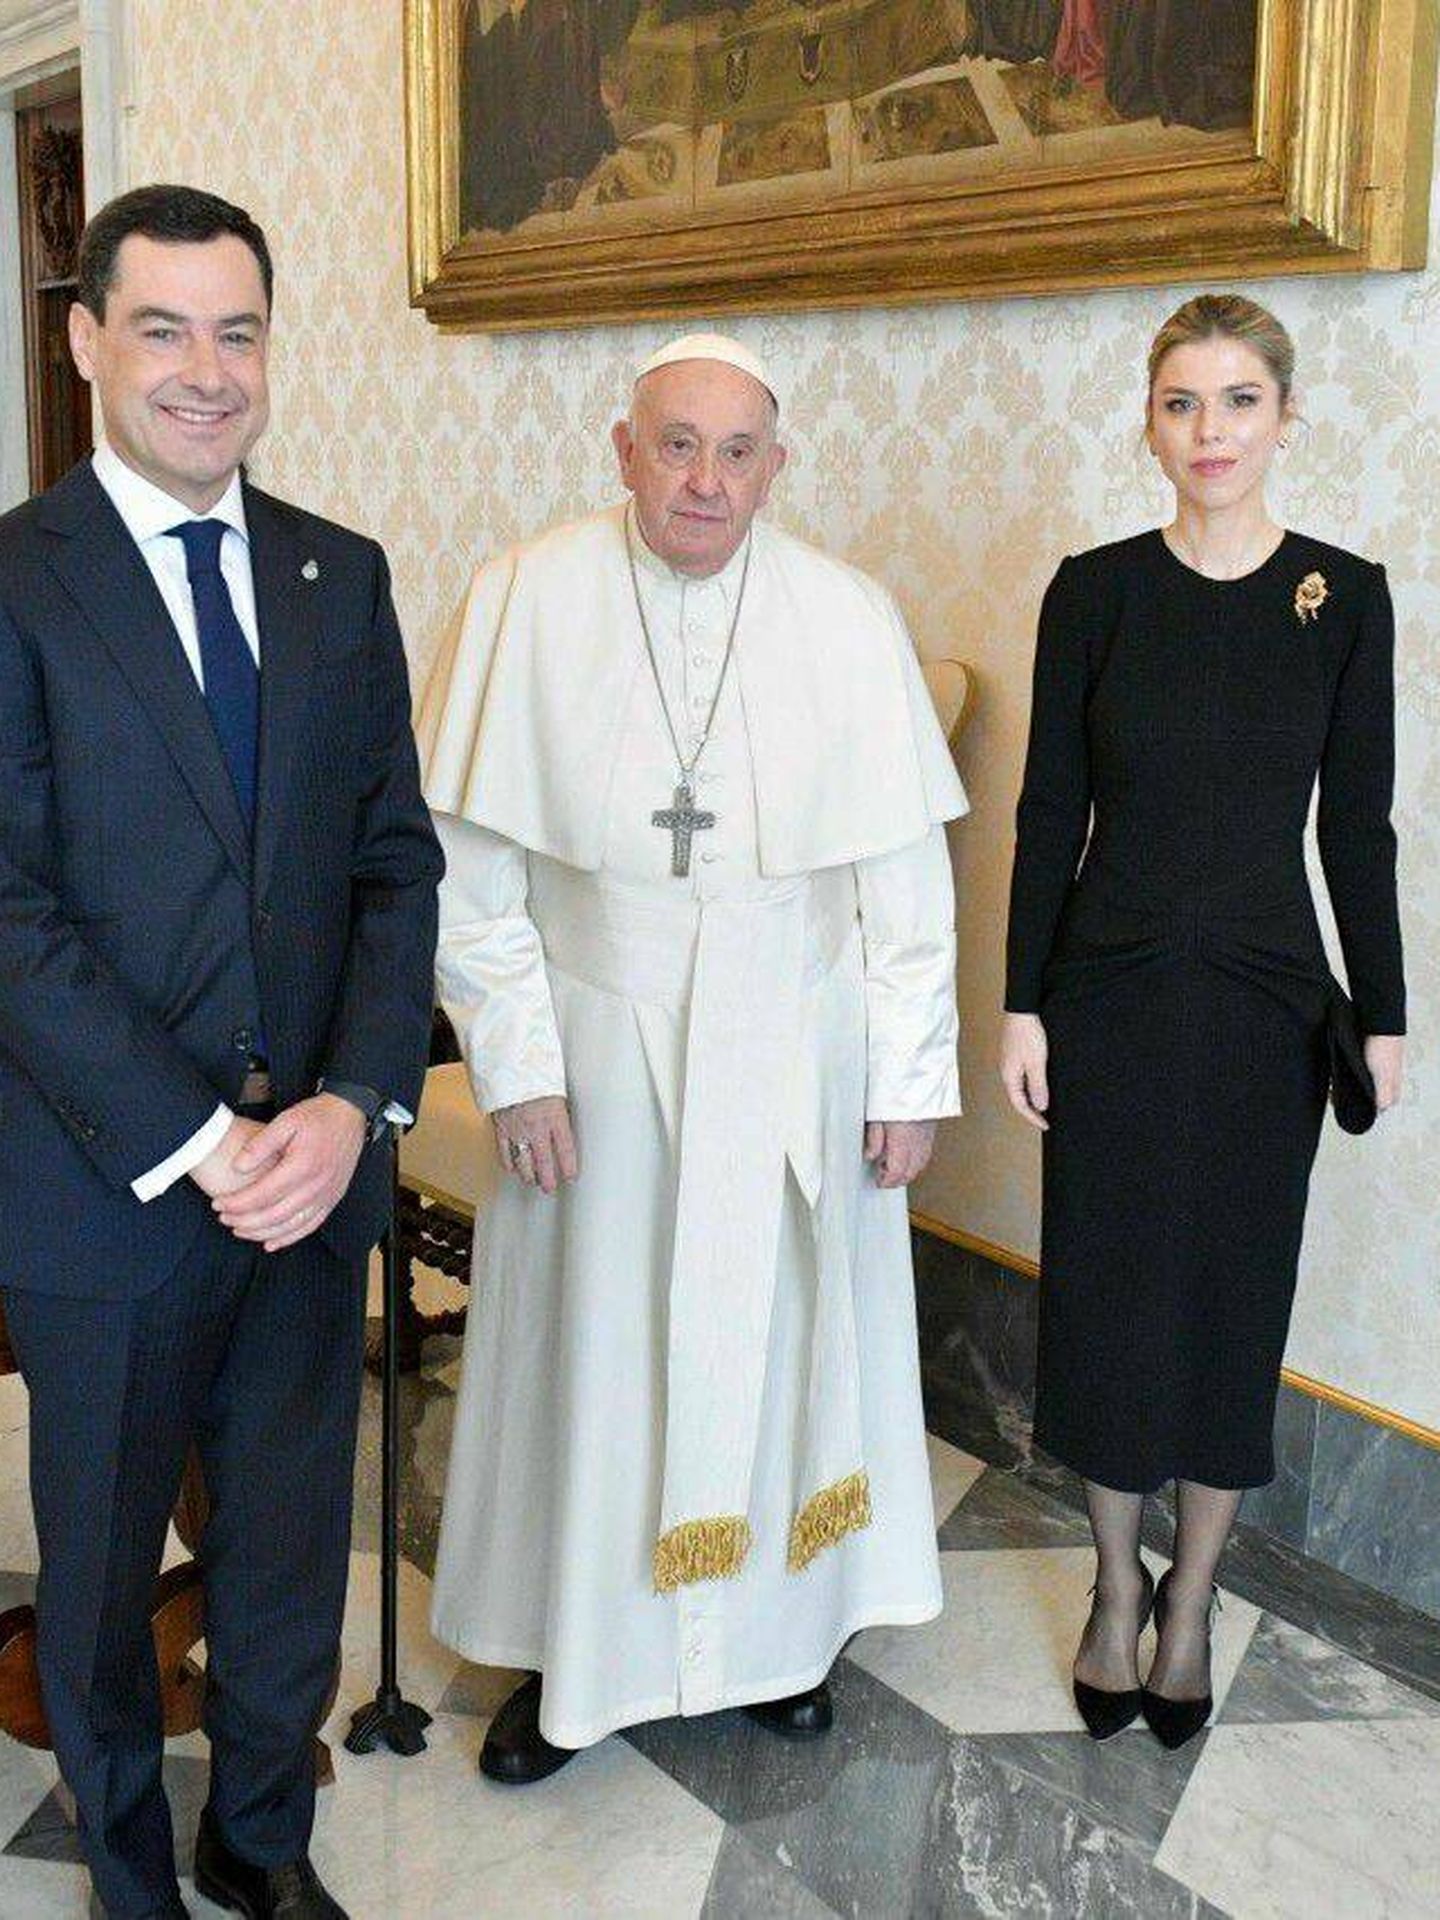 Manuela Villena y Juanma Moreno Bonilla, junto al Papa Francisco. (Cortesía El Vaticano)